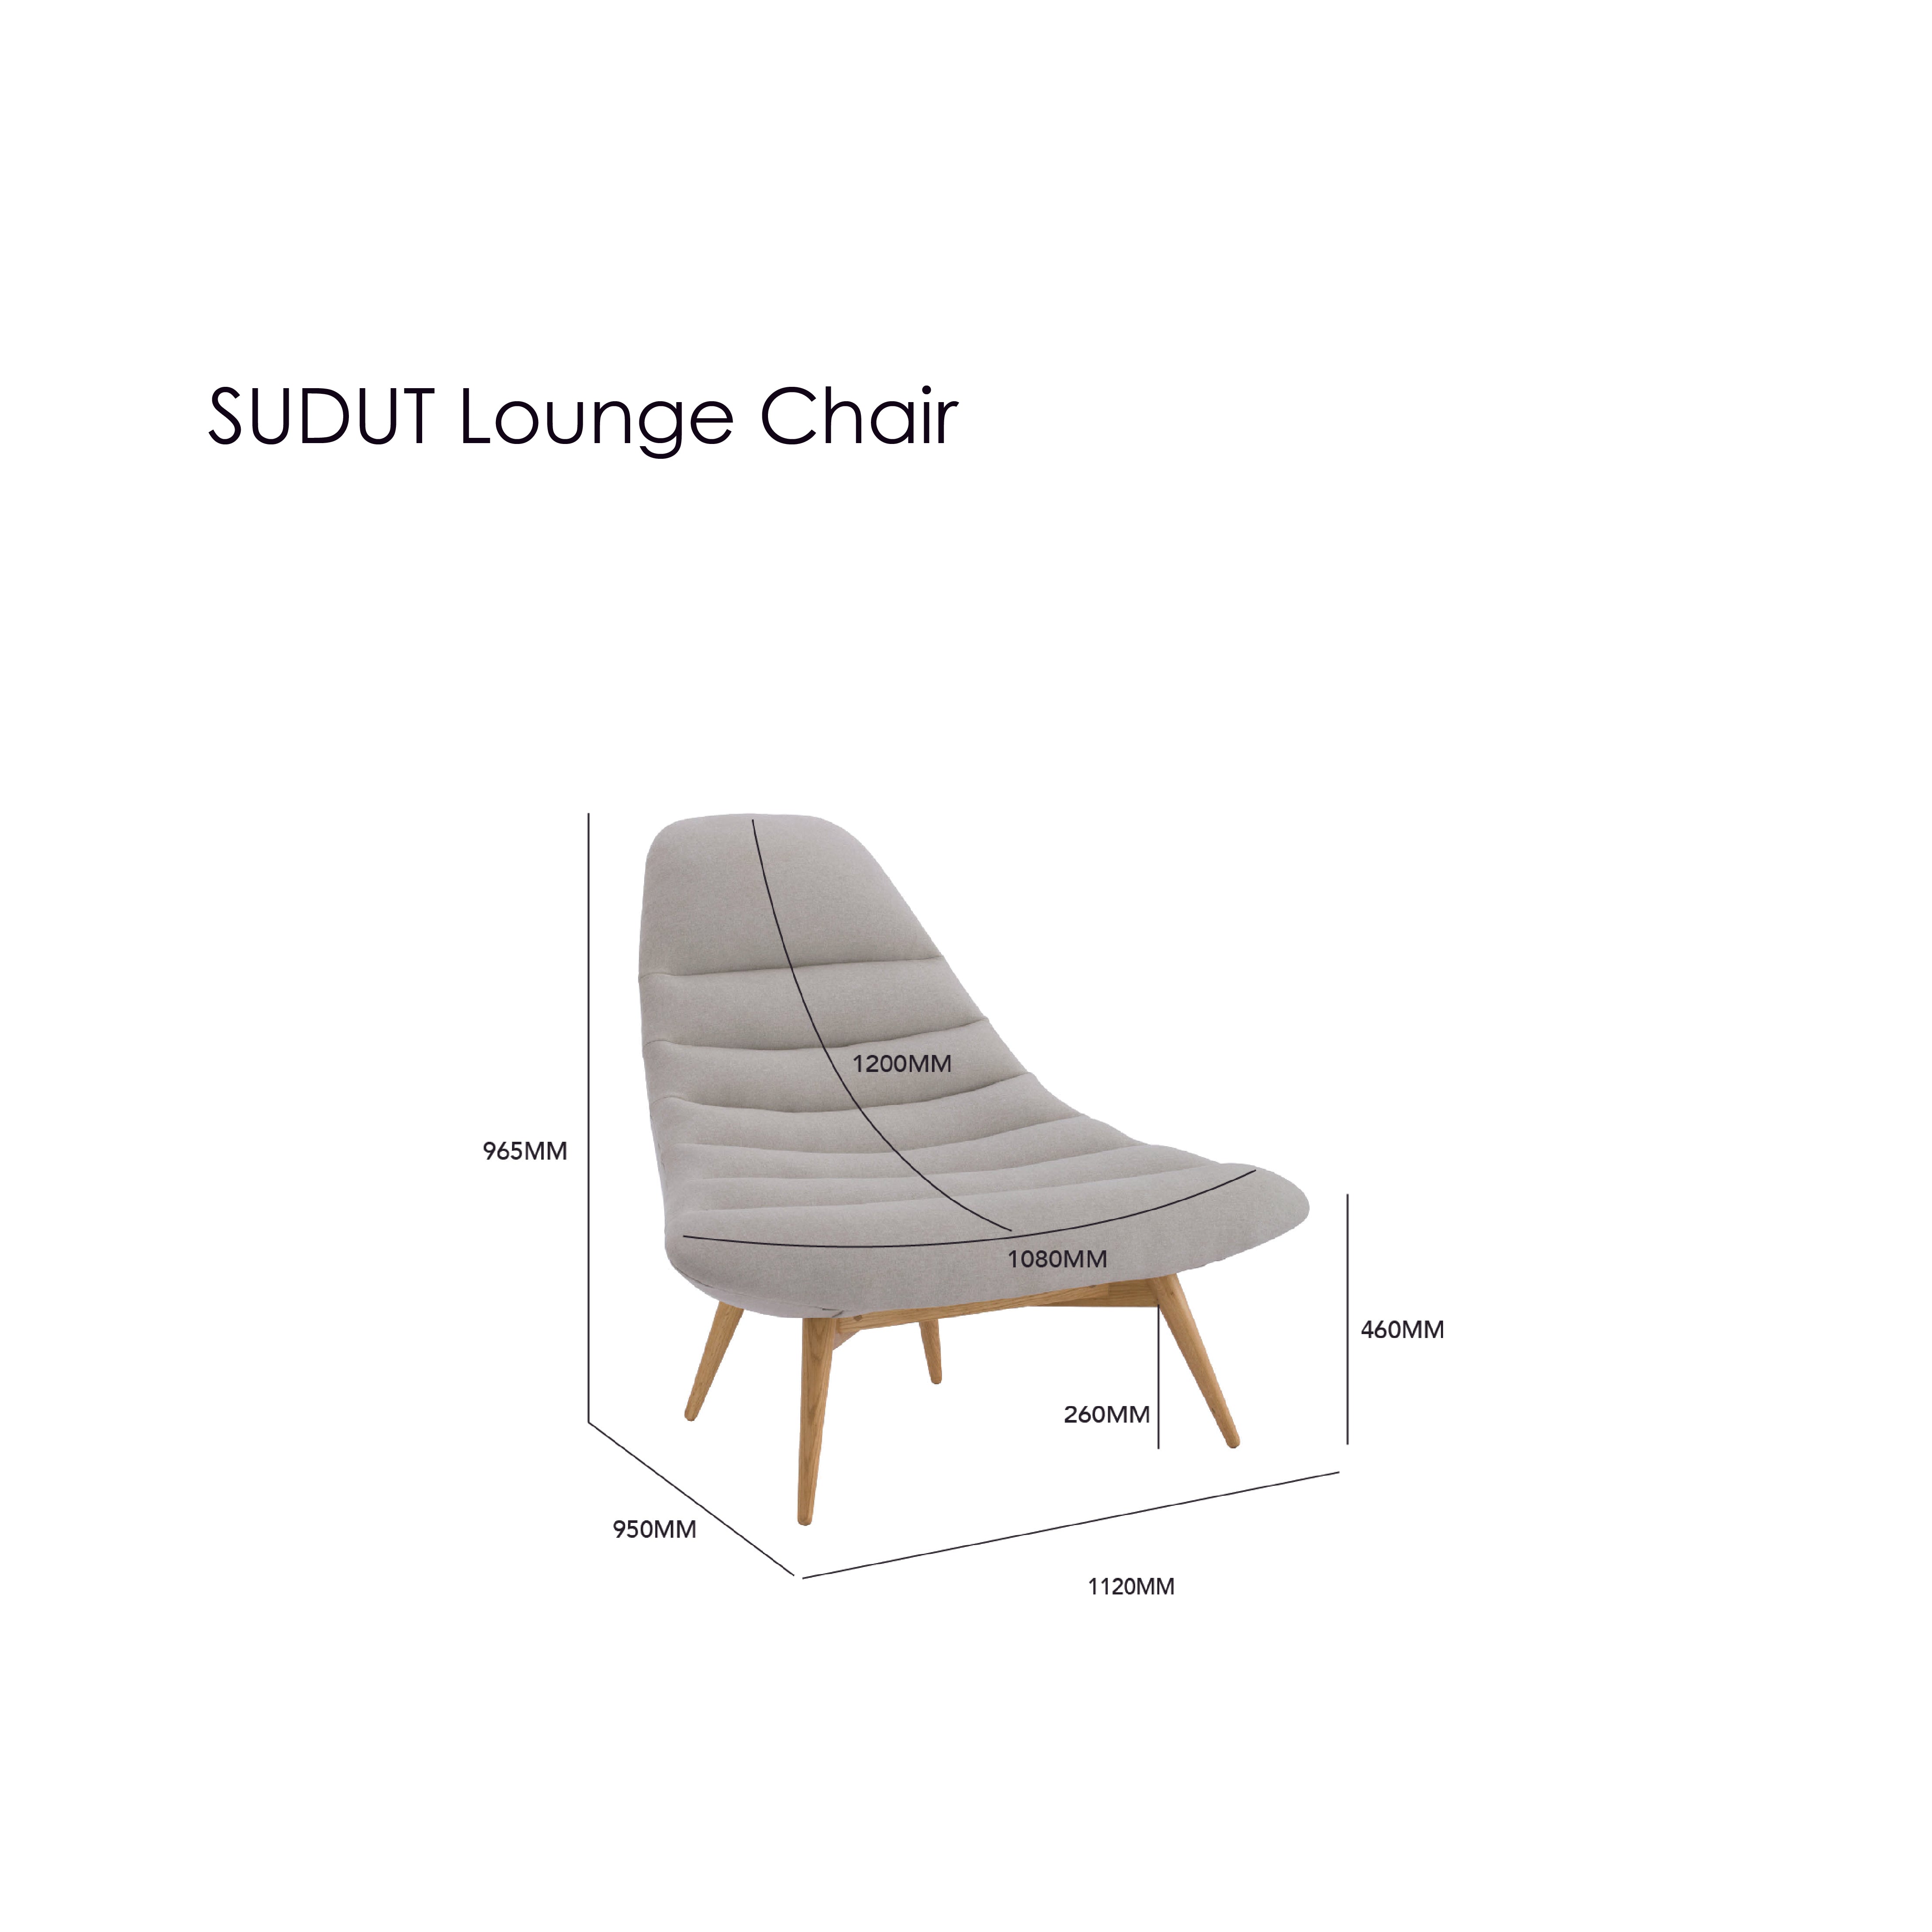 SUDUT Lounge Chair